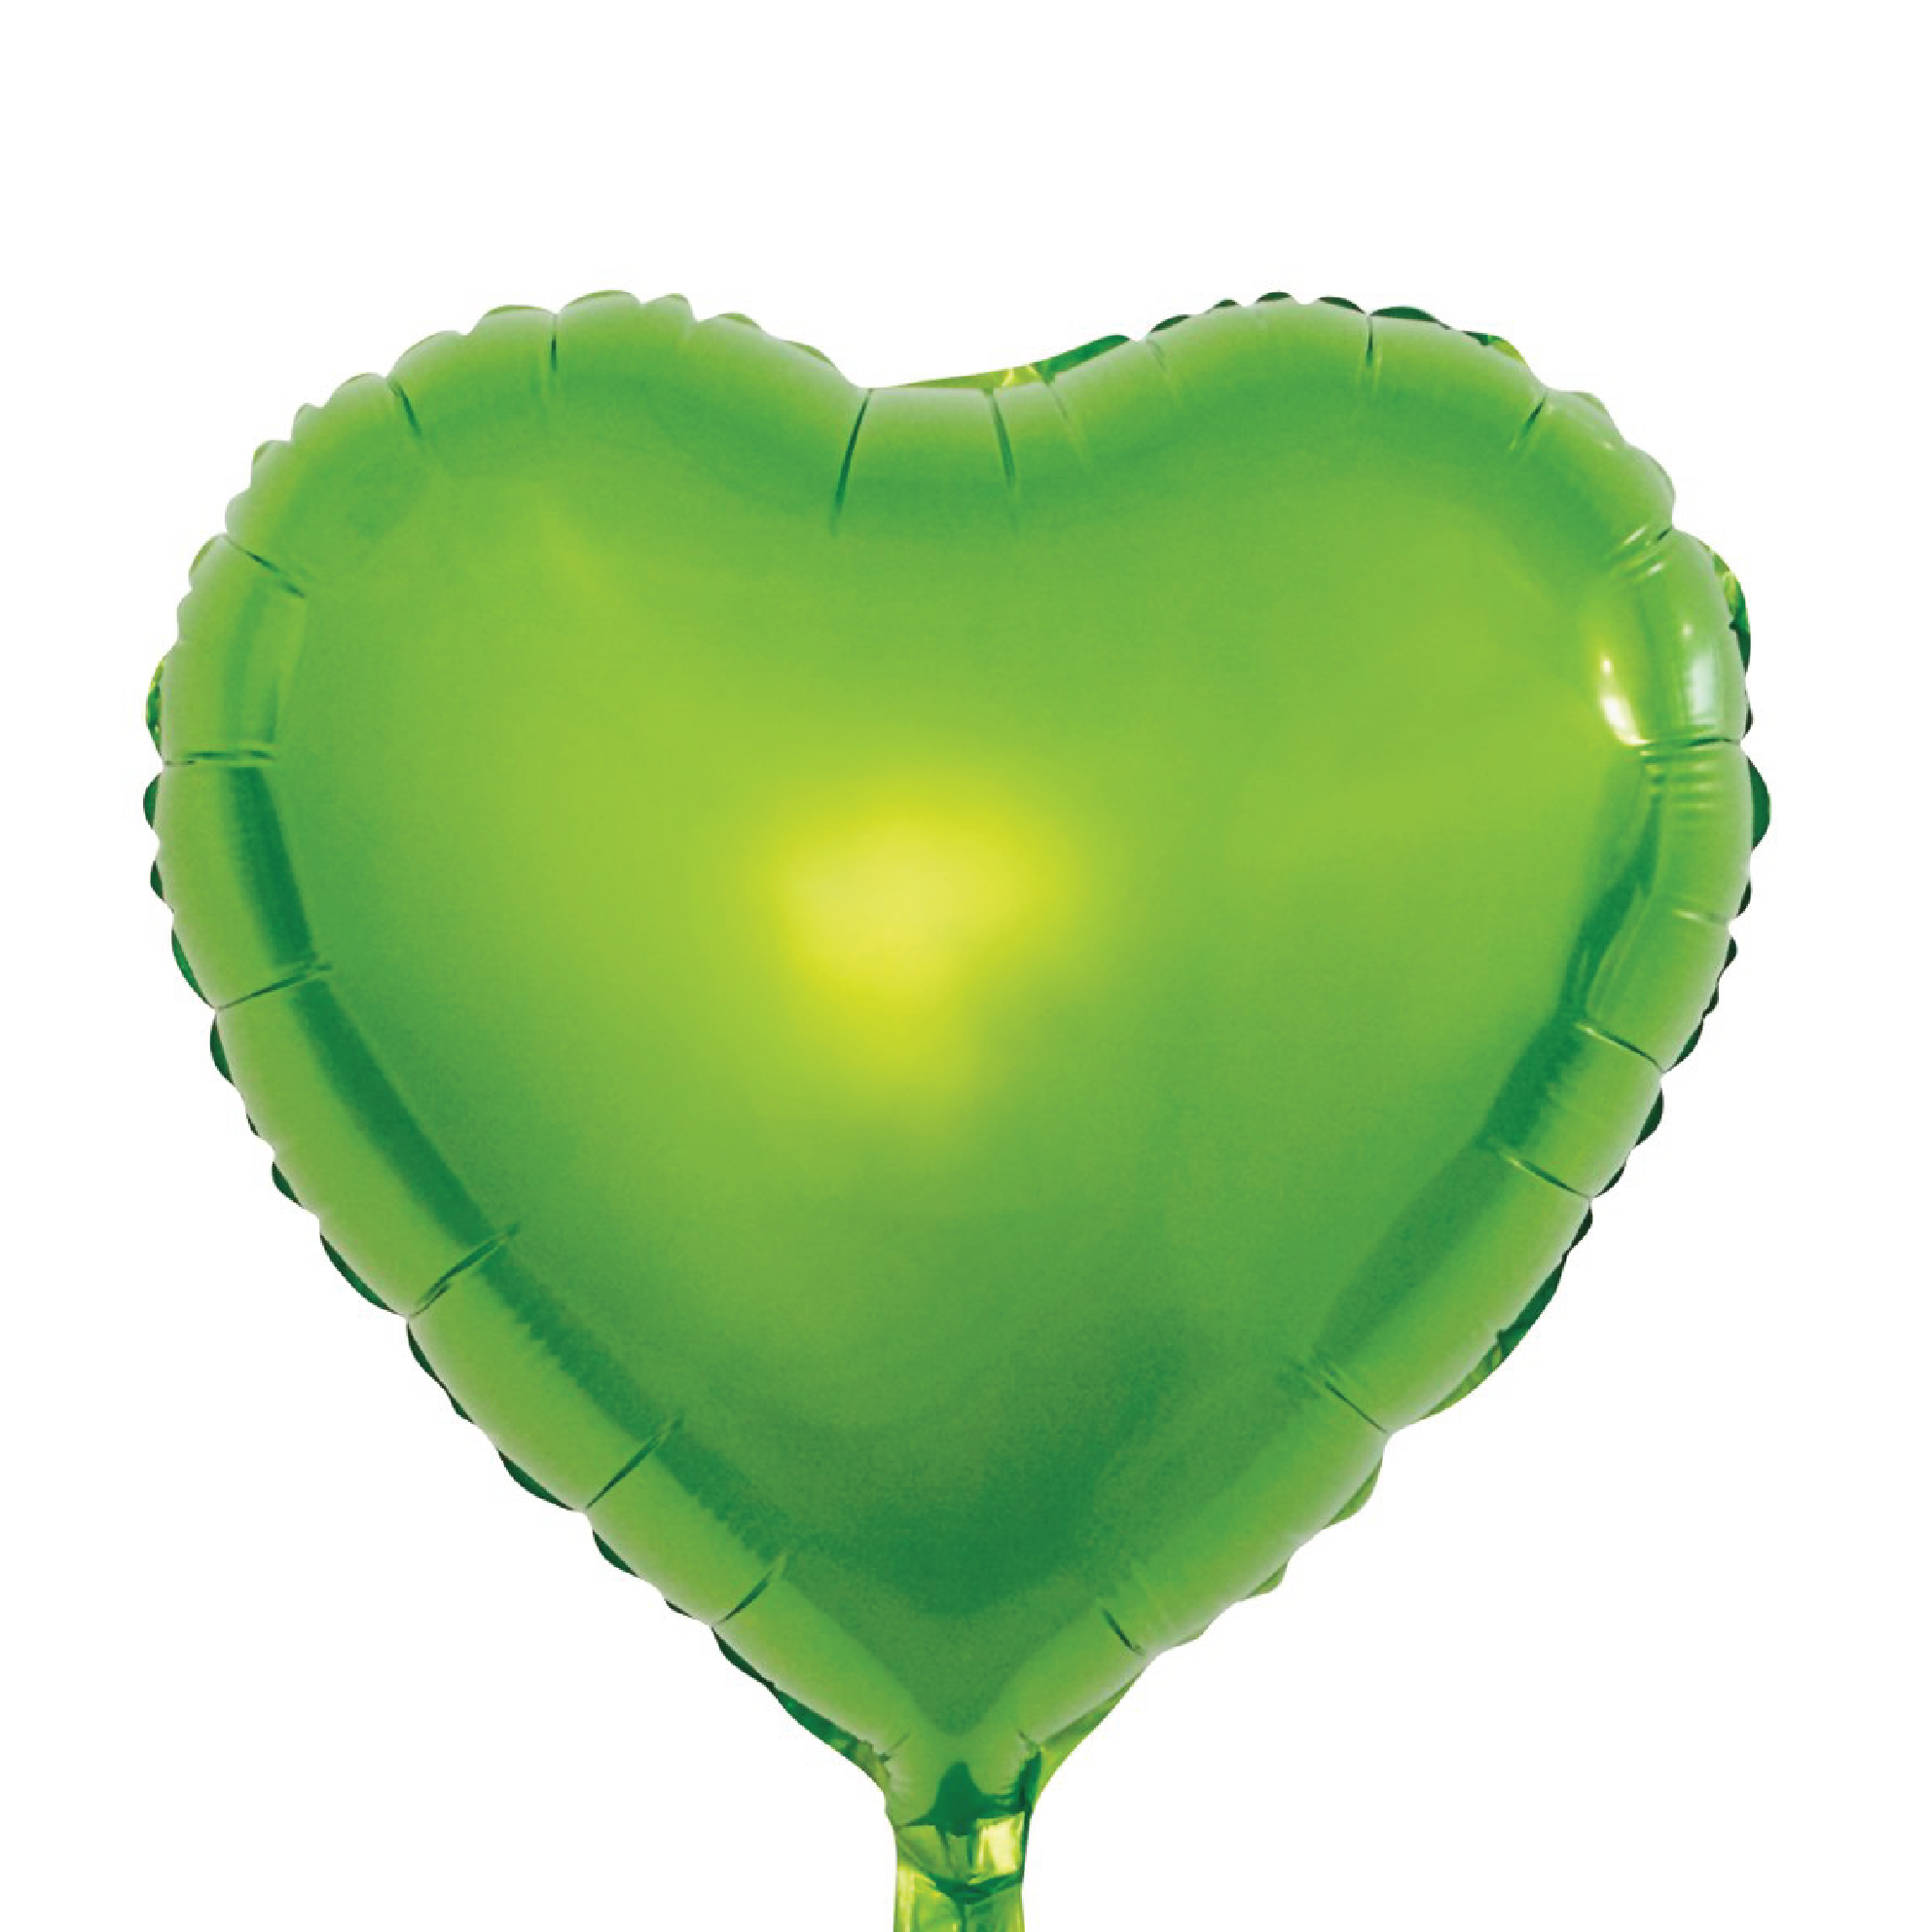 Folieballong Hjärta Light Green 46 cm